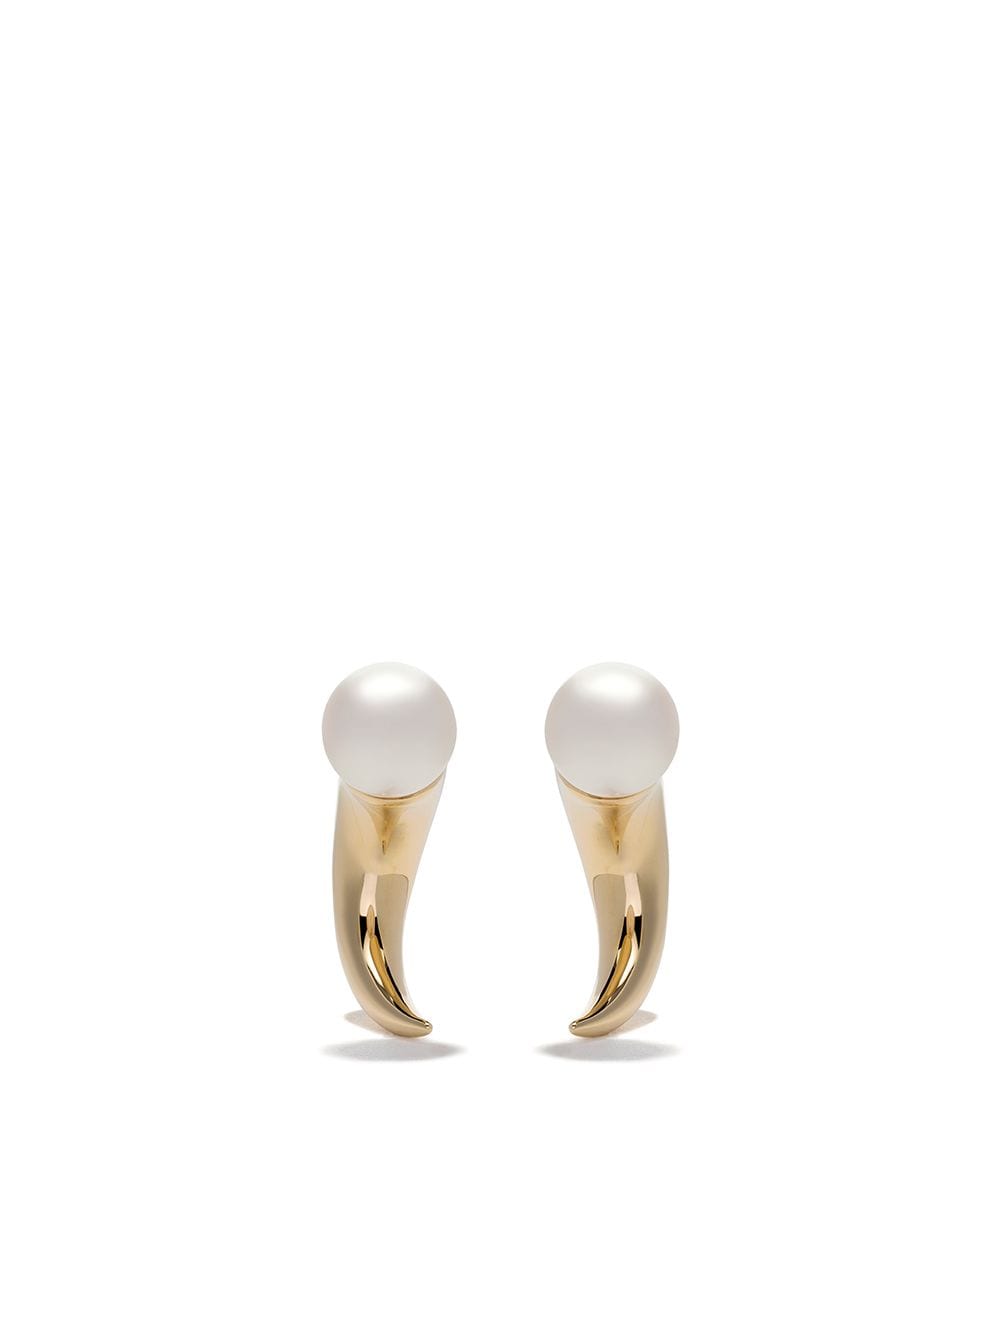 boucles d'oreilles en or 18ct ornées de perles Akoya